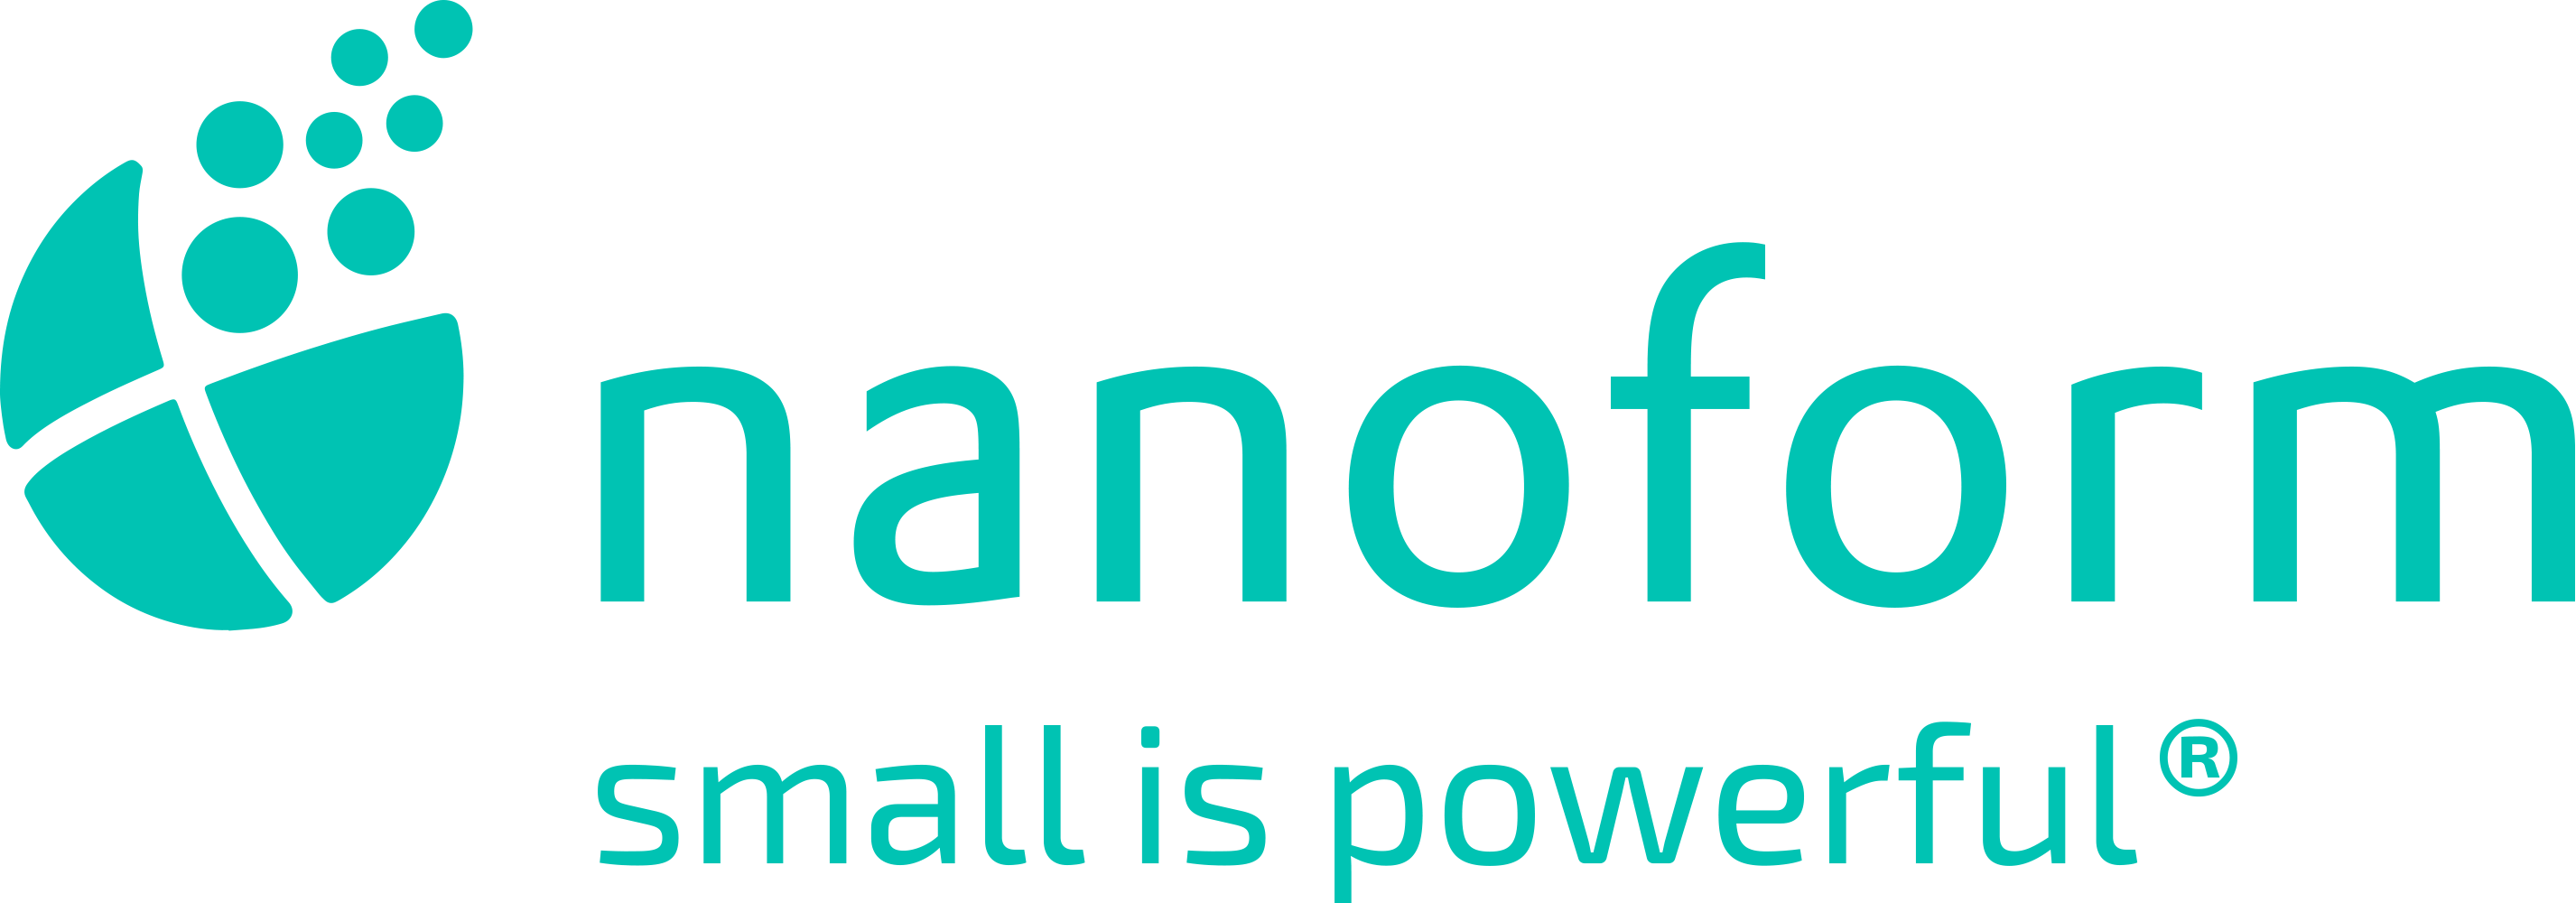 Nanoform Finland Oy